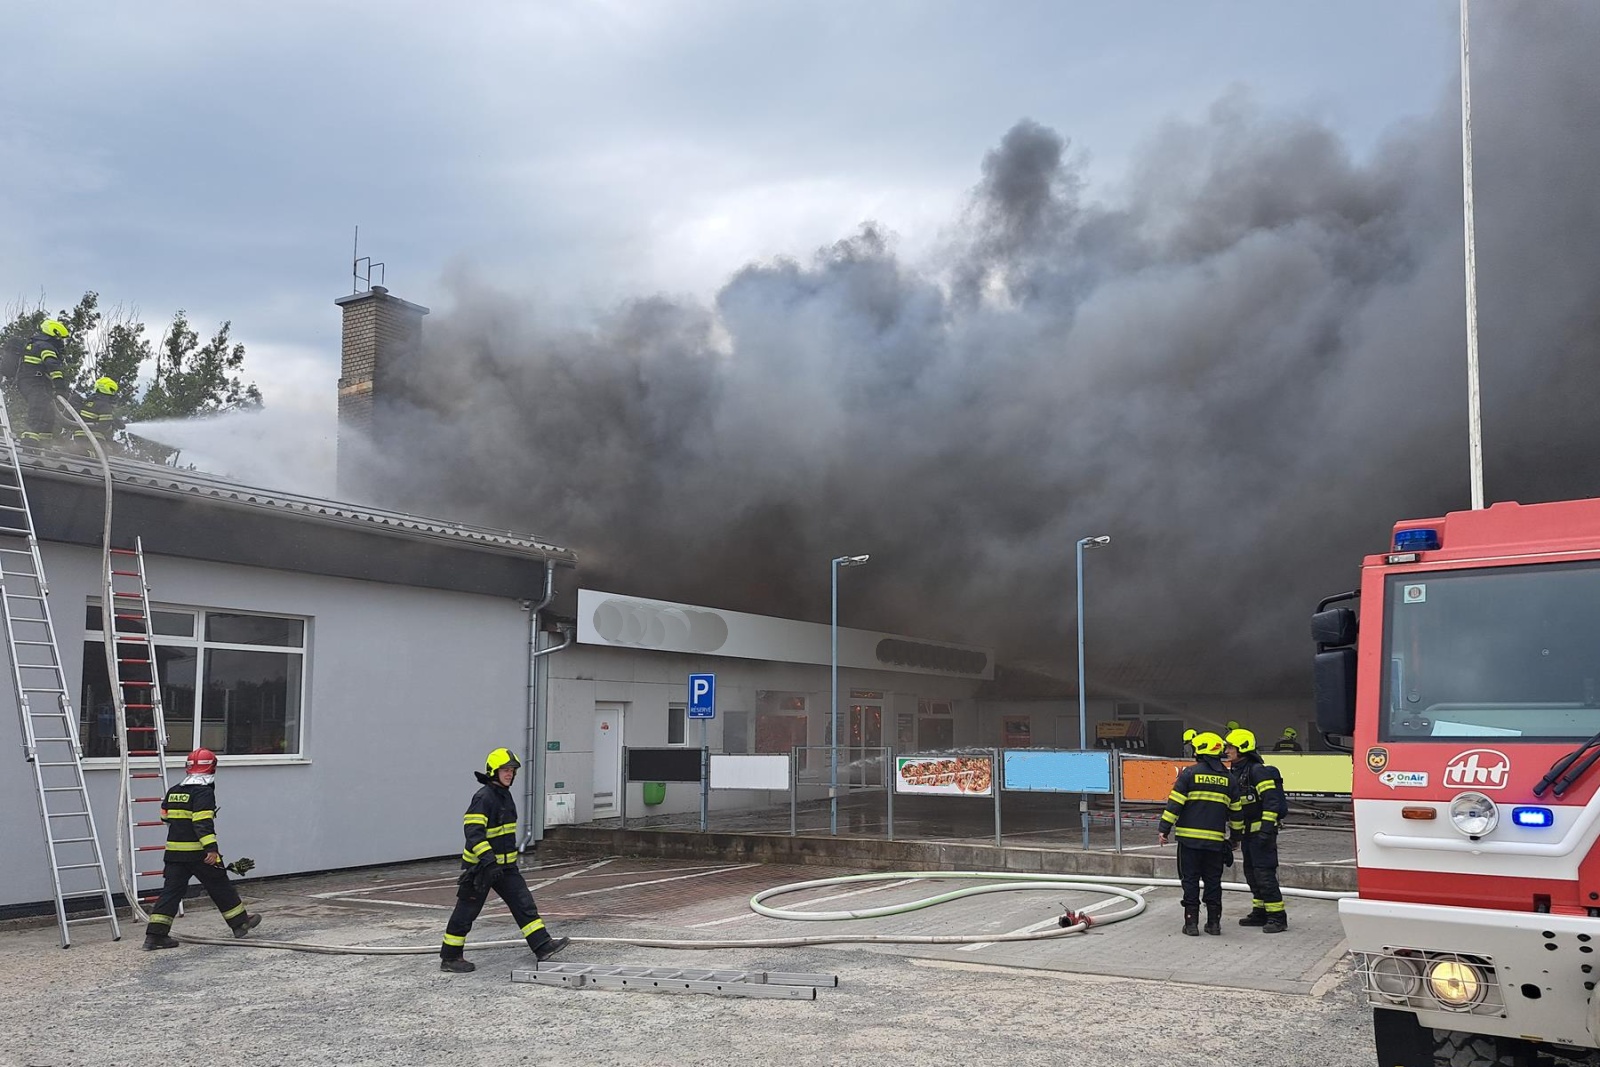 001-Požár v kladenské firmě likvidovaný ve zvláštním poplachovém stupni.jpg